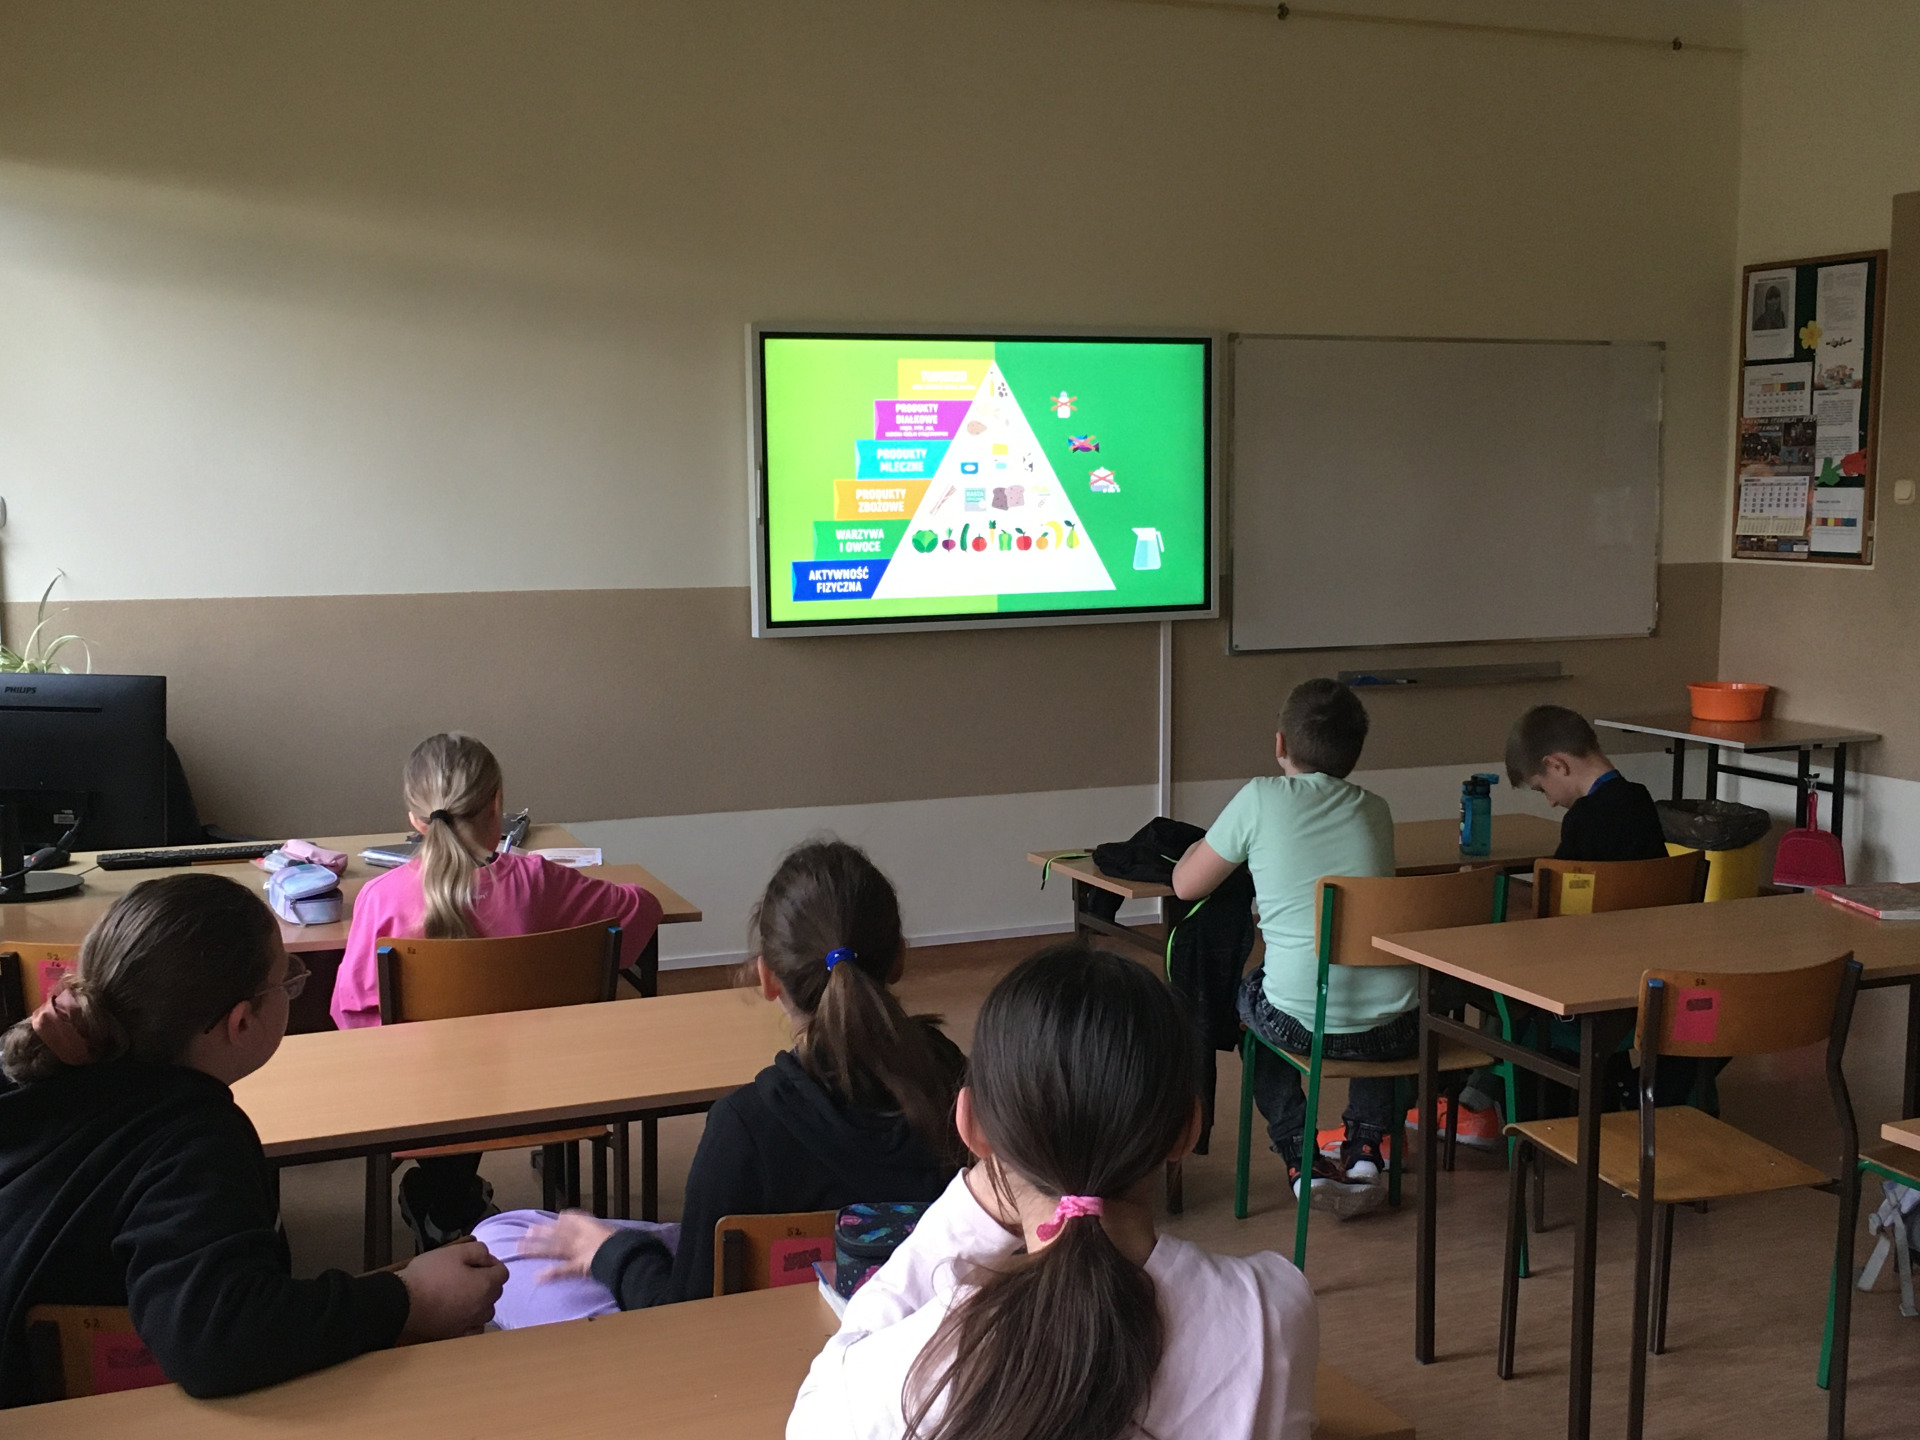 Uczniowie oglądają film edukacyjny o zdrowym odżywianiu- piramid